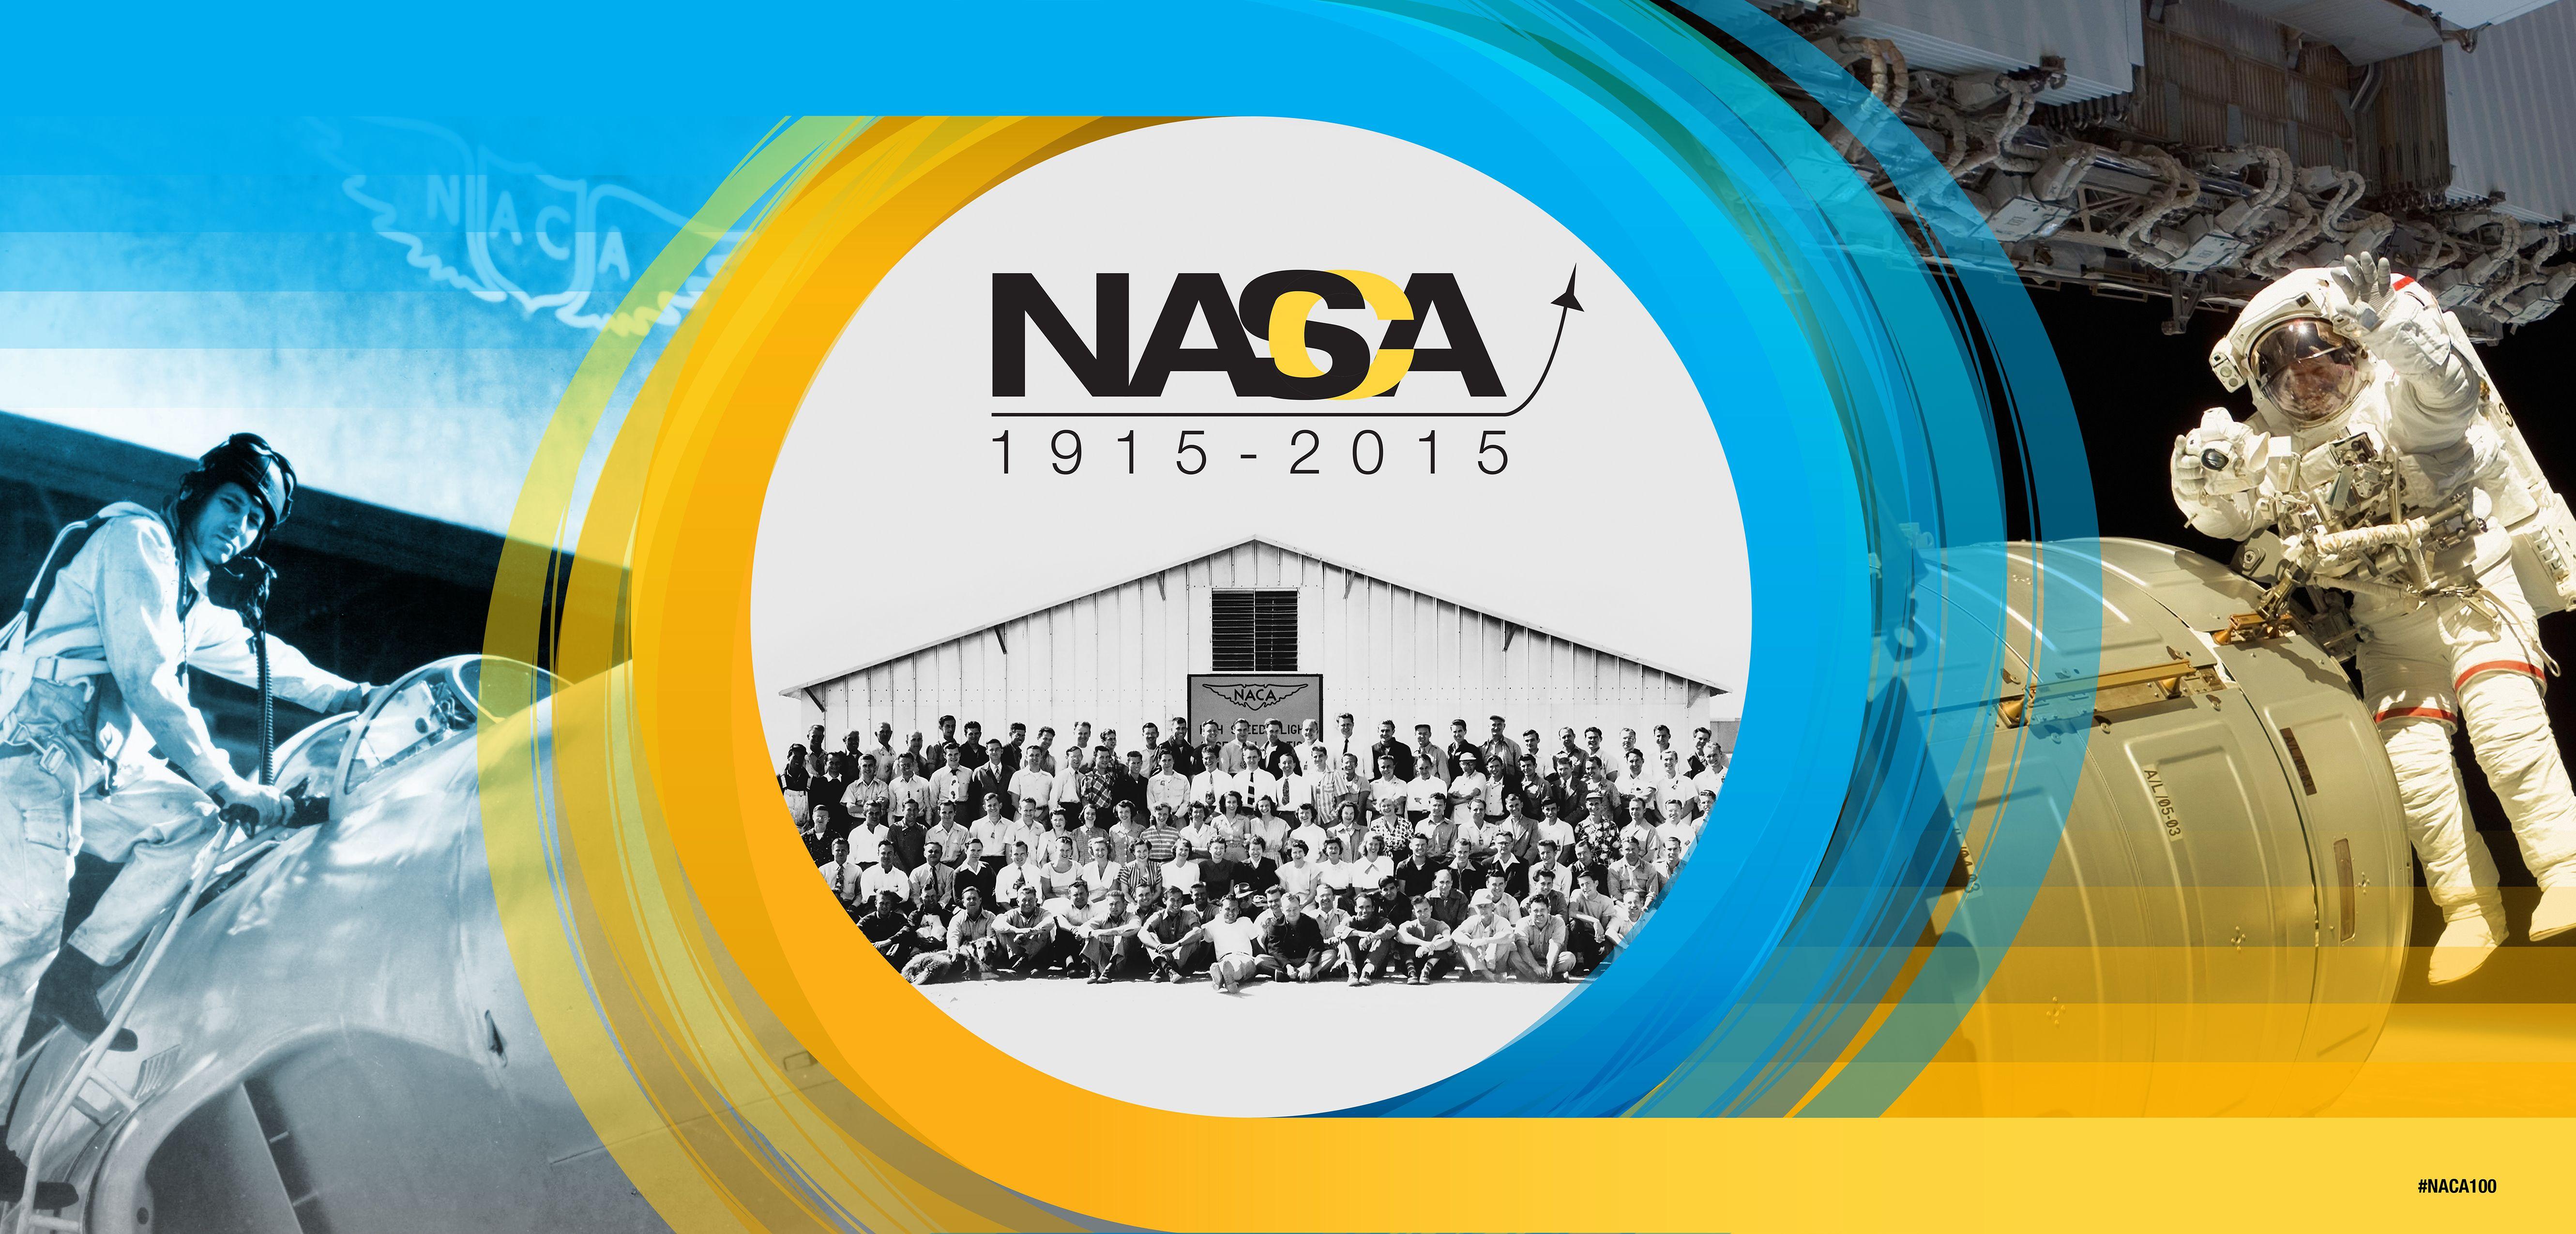 NACA NASA Logo - Celebrate the Centennial of NASA's Predecessor, the NACA | NASA